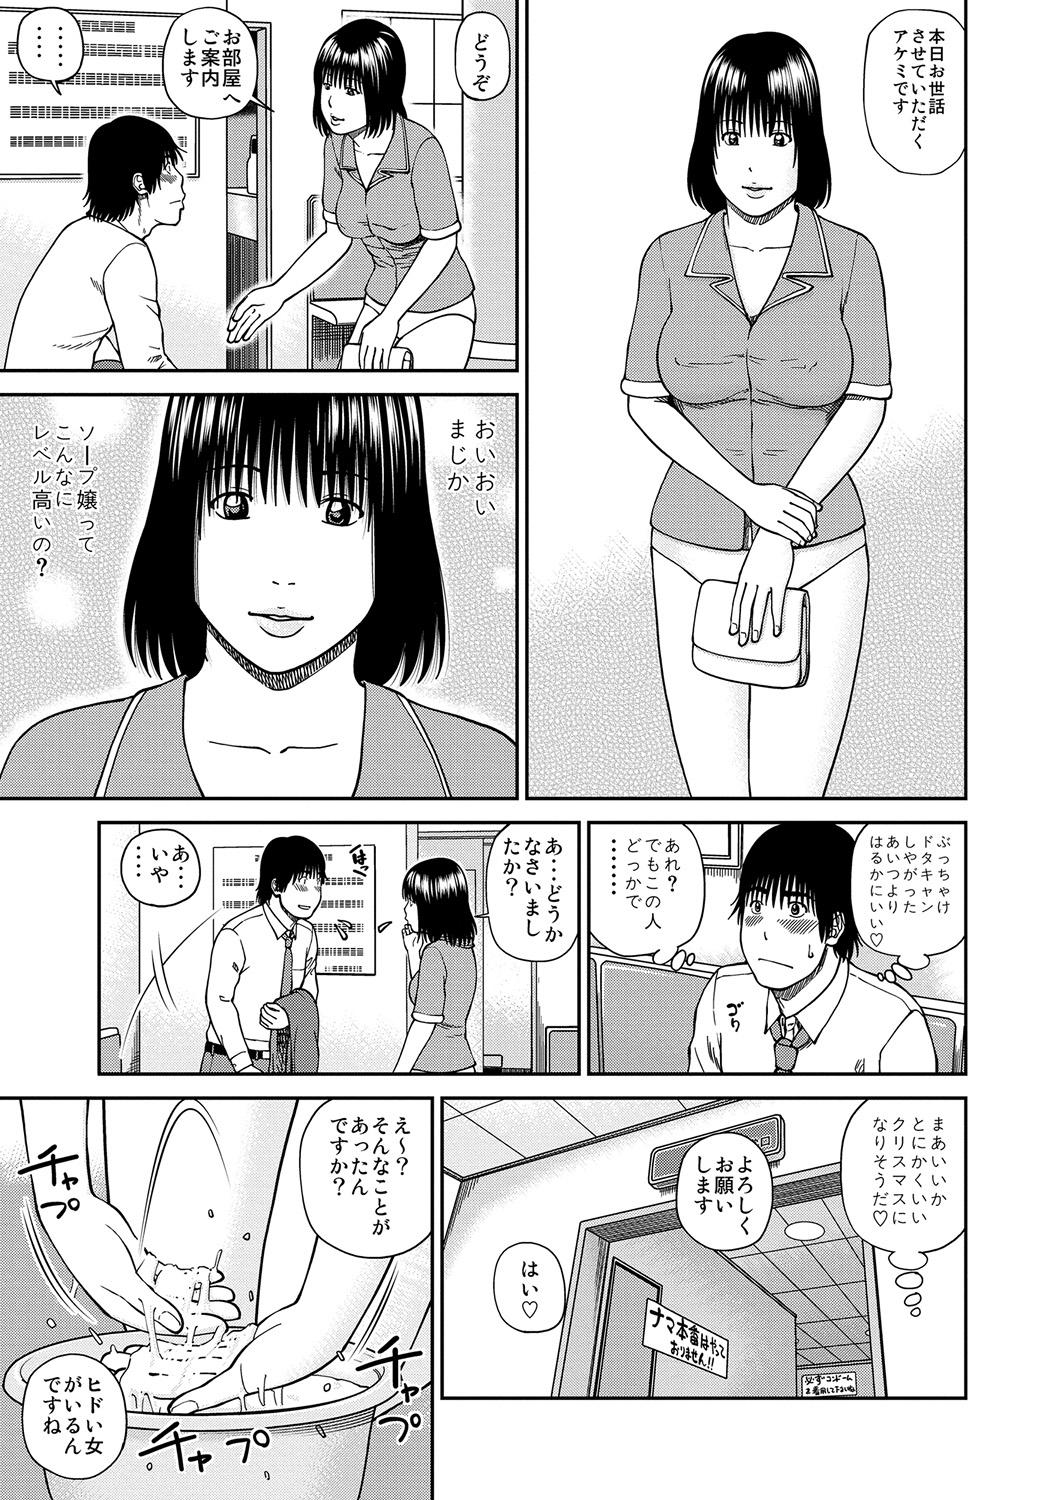 Glam WEB Ban COMIC Gekiyaba! Vol. 45 Petite Teenager - Page 4